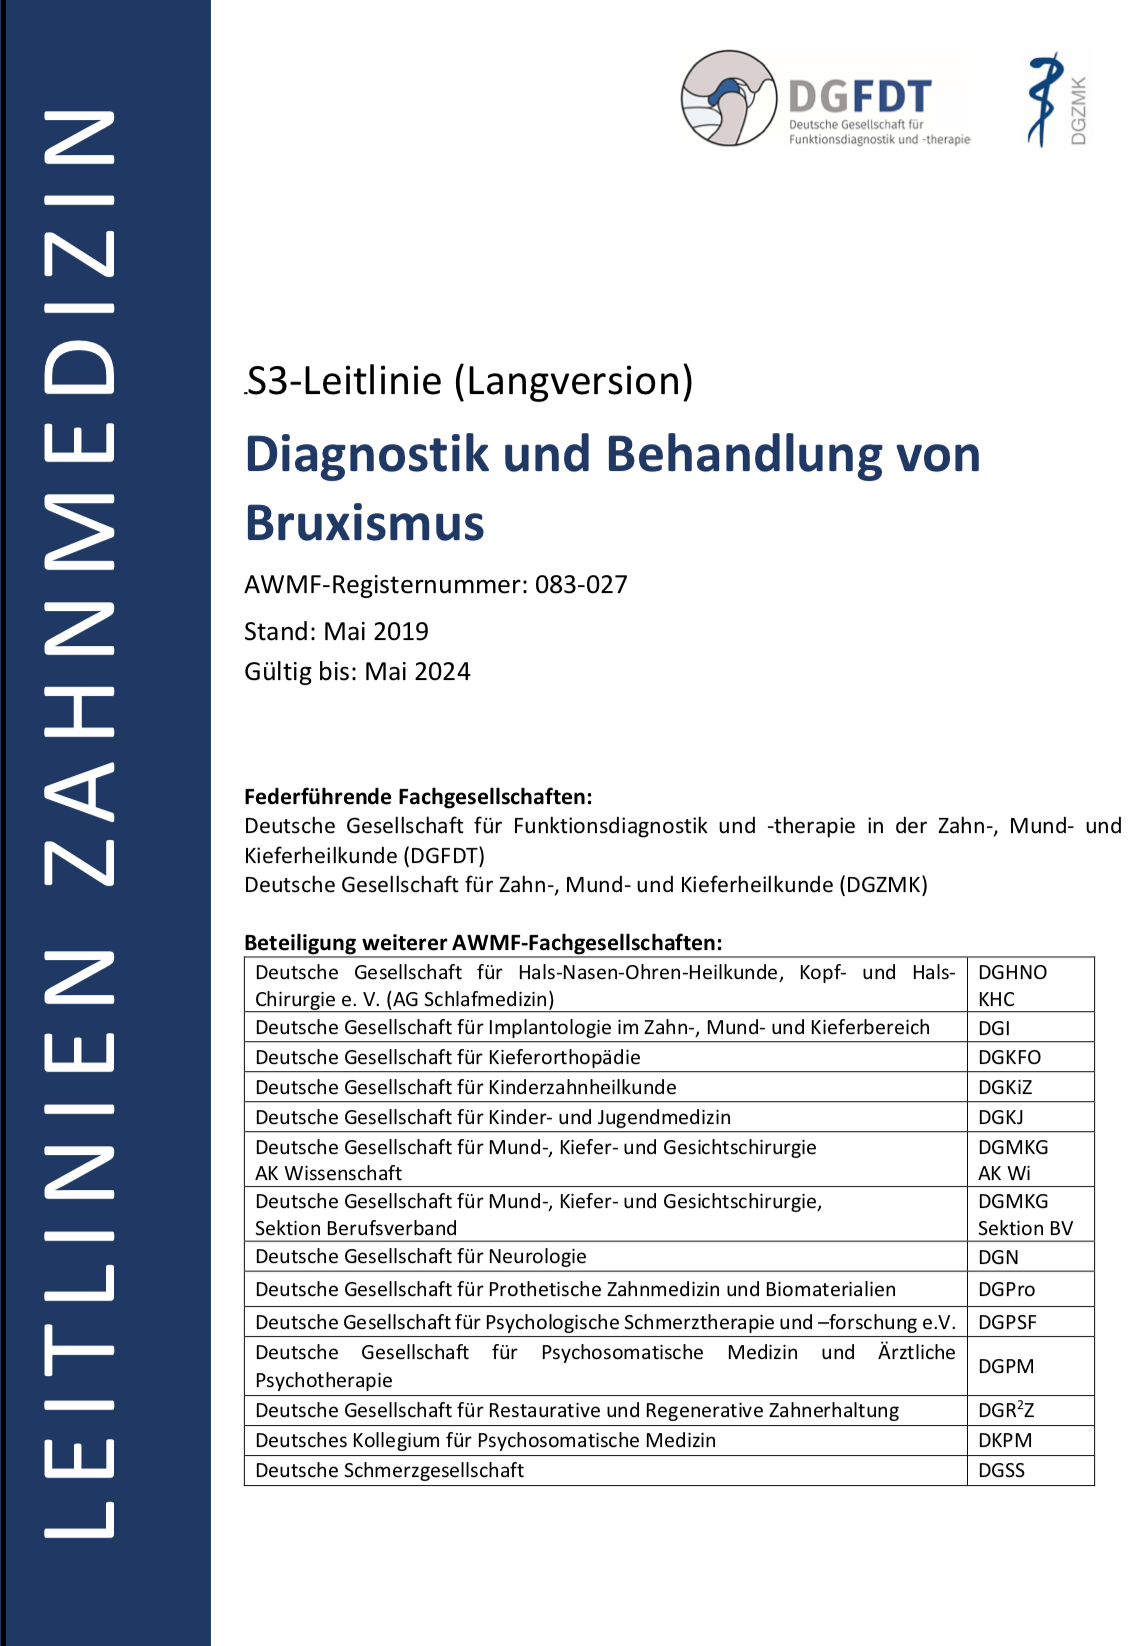 S3-Leitlinie zur Diagnostik und Behandlung von Bruxismus Titelseite